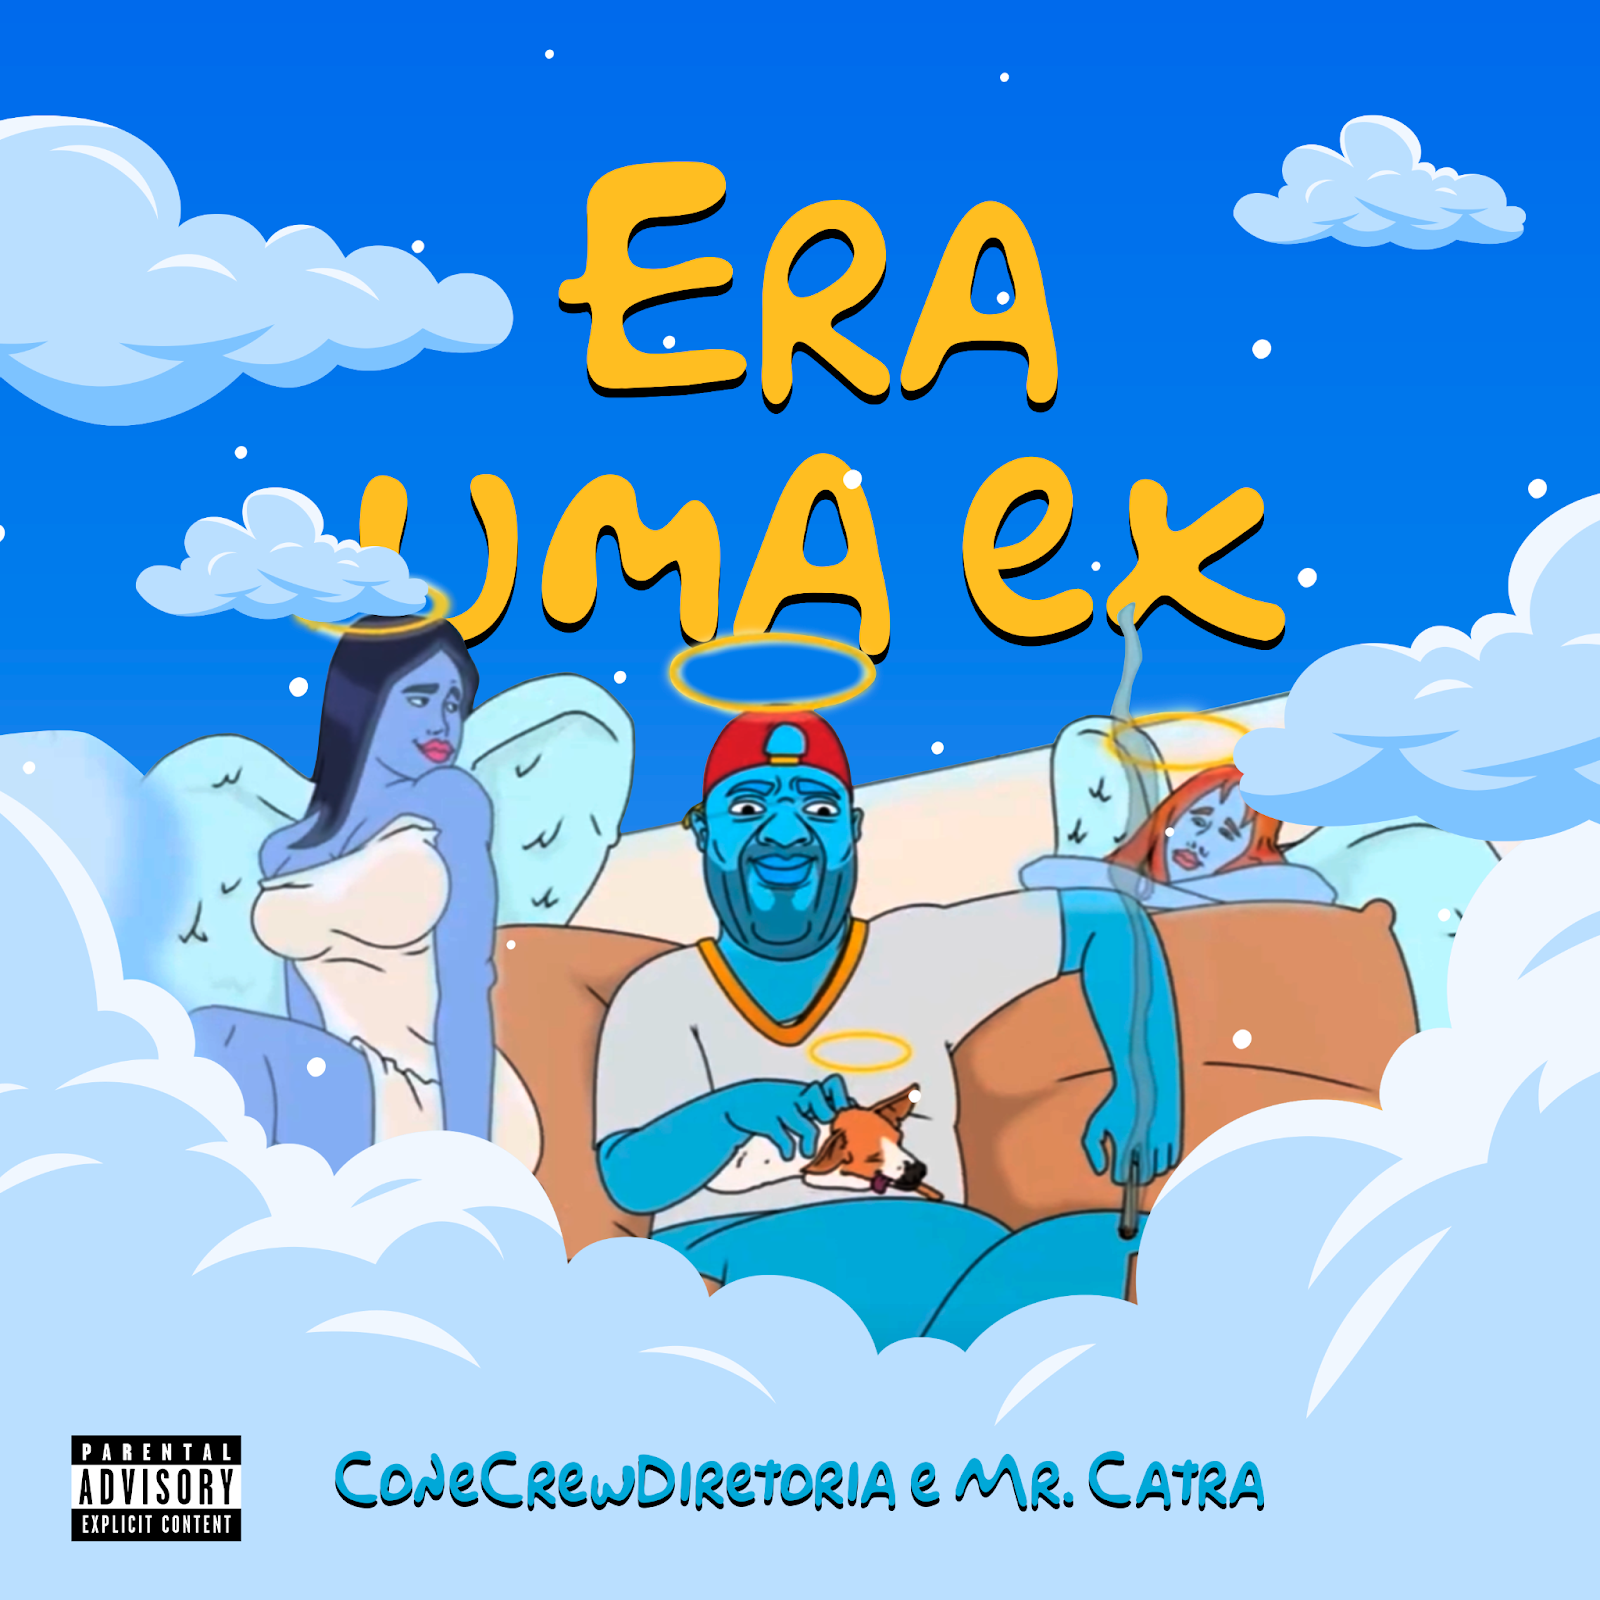 Cone Crew Diretoria faz homenagem postuma a Mr. Catra em novo single POP CYBER